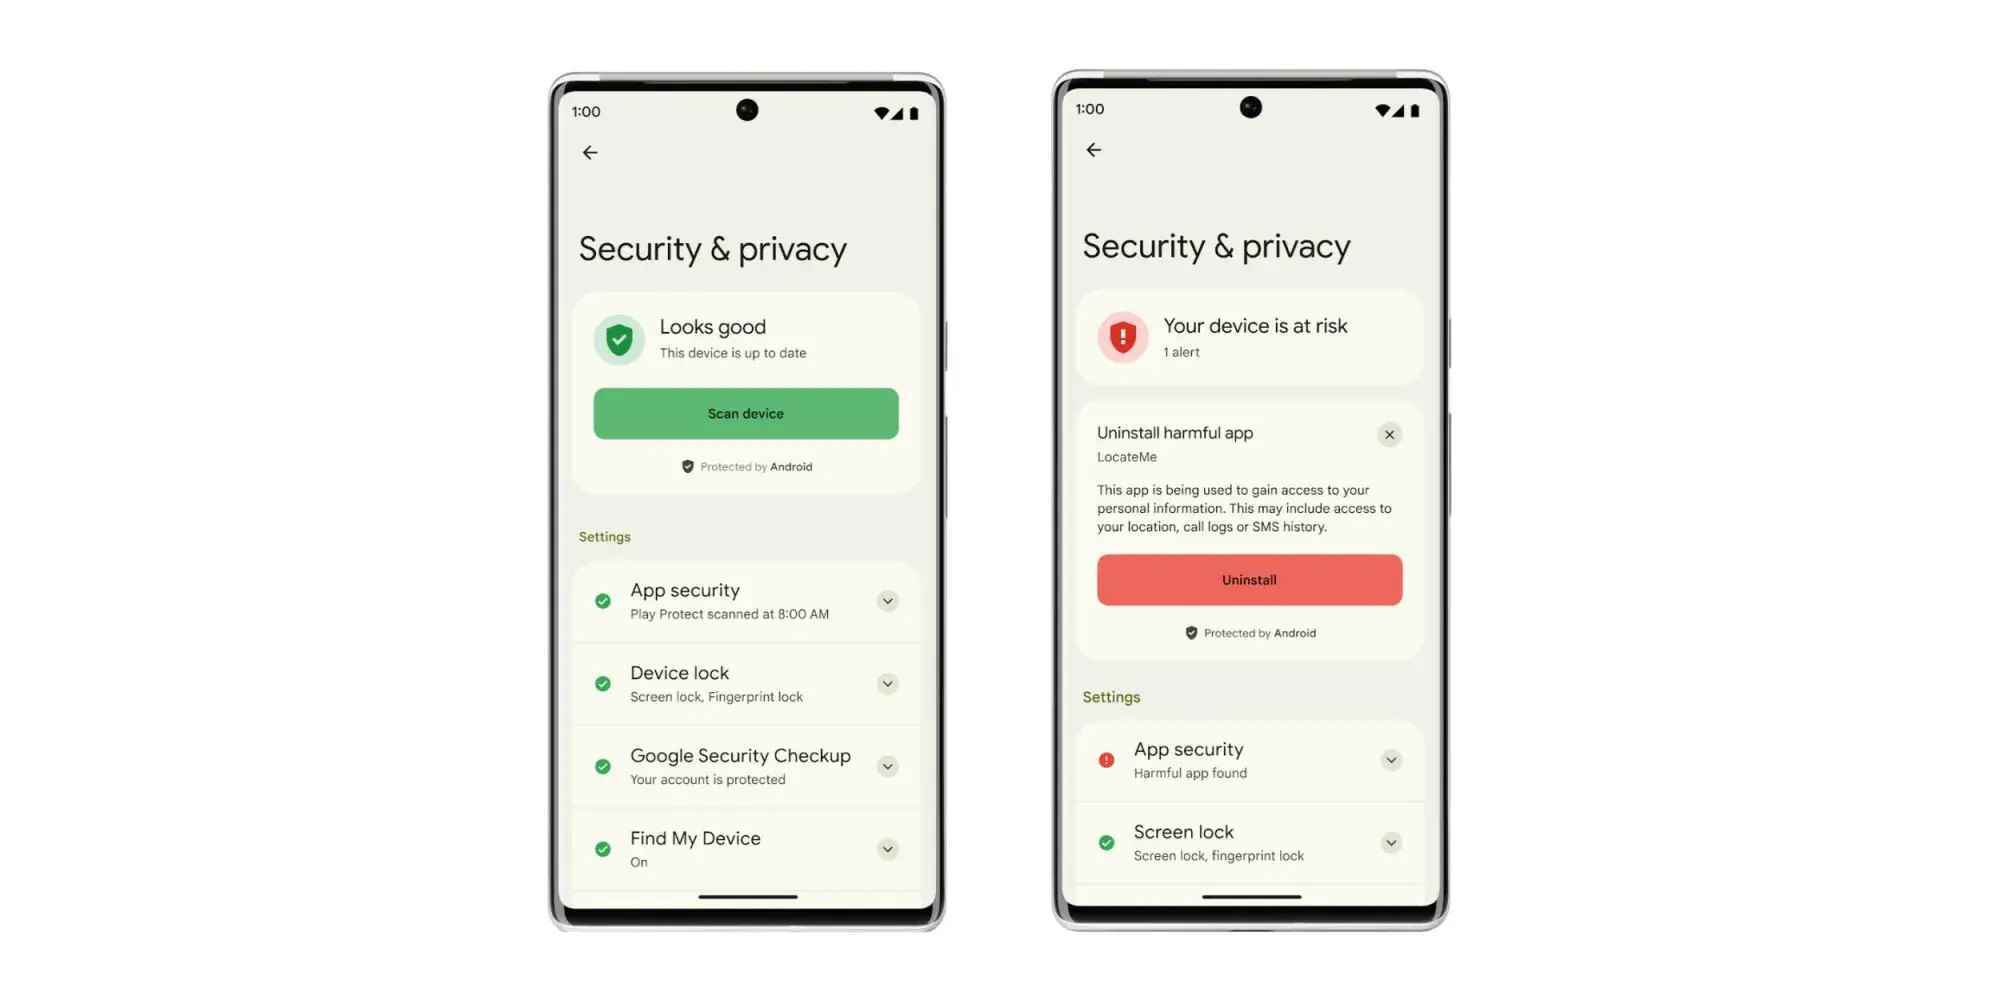 Google yeni tanıtıyor "Android tarafından korunuyor" Android'de güvenlik ve gizlilik için marka bilinci oluşturma